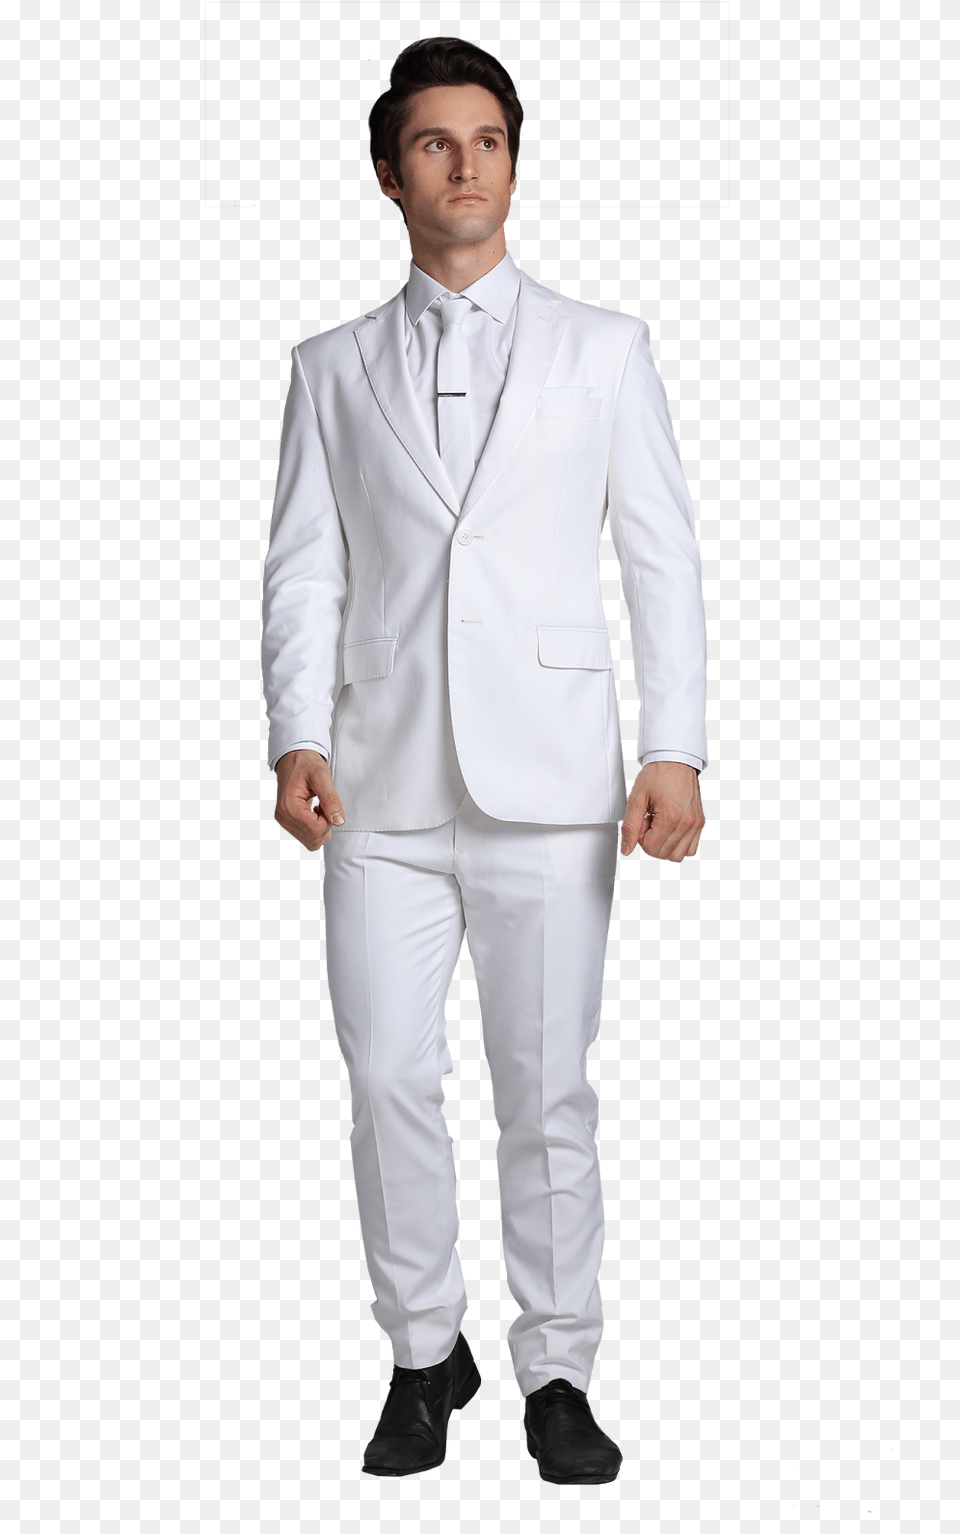 Men Suit Siyaram Suit, Tuxedo, Clothing, Formal Wear, Shirt Png Image